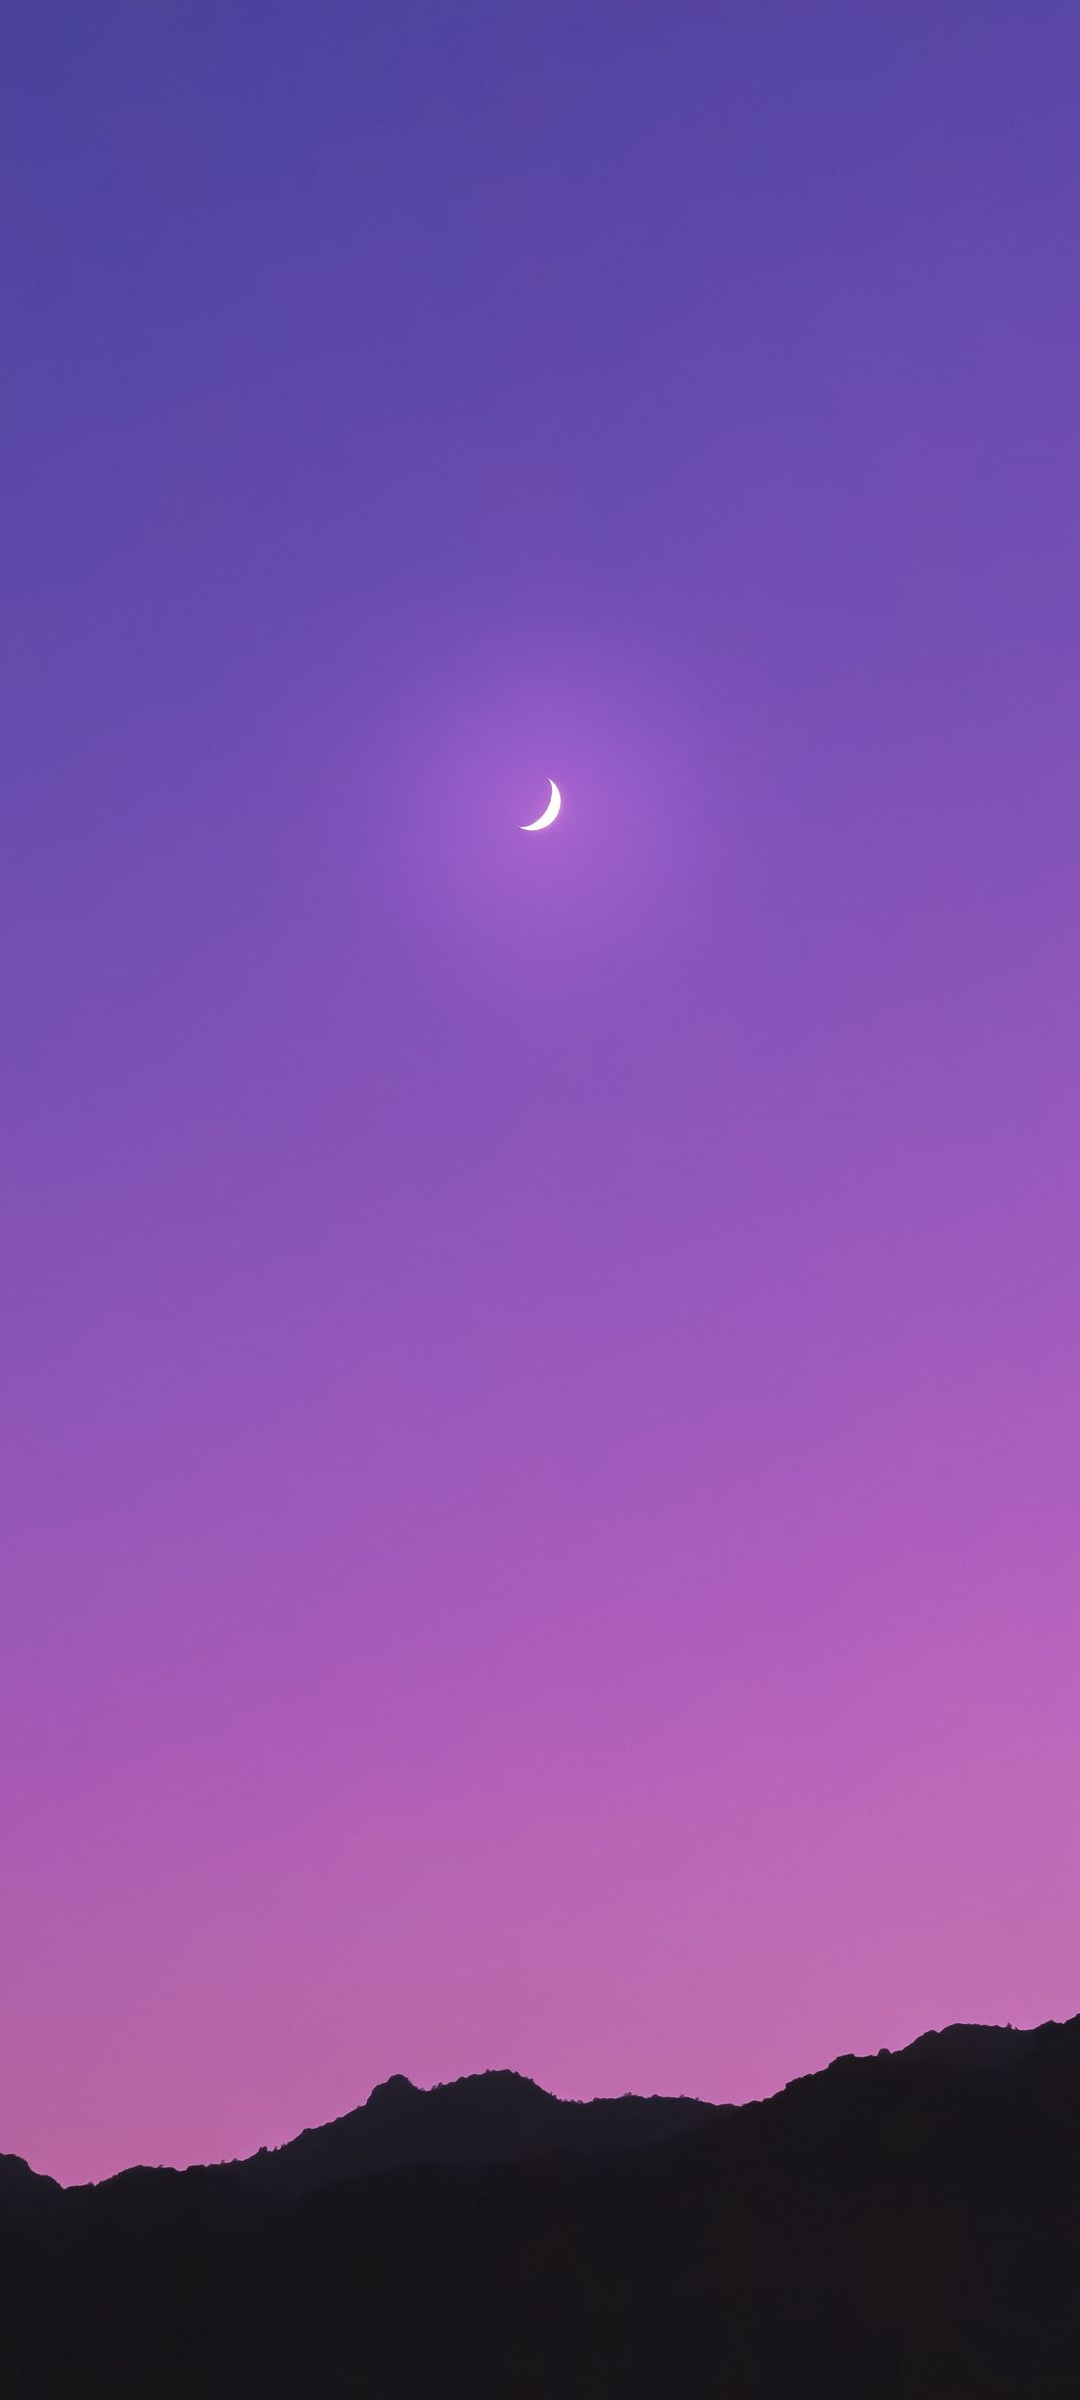 三日月 紫のグラデーションの空 黒い山 Mi 10 Lite 5g Androidスマホ壁紙 待ち受け スマラン